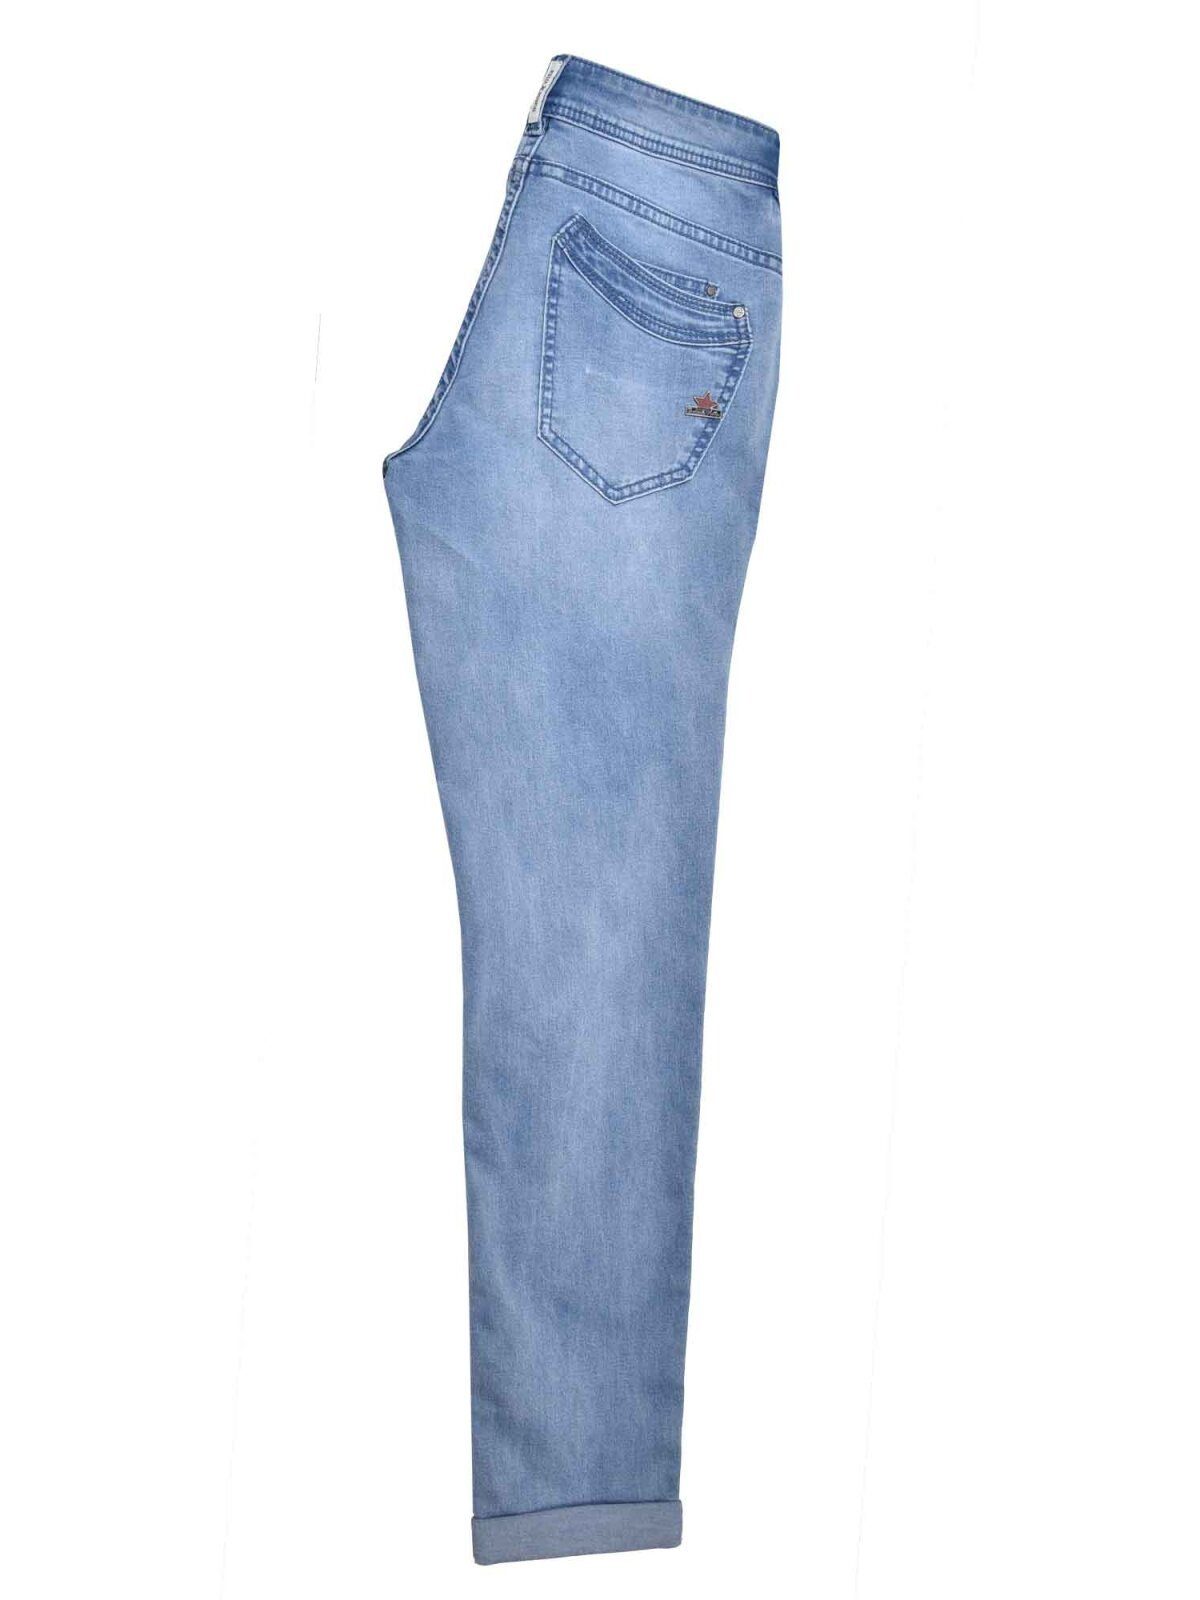 MALIBU Stretch-Jeans stone Vista Stretch B5001 888 333.9068 light VISTA Denim BUENA Buena -